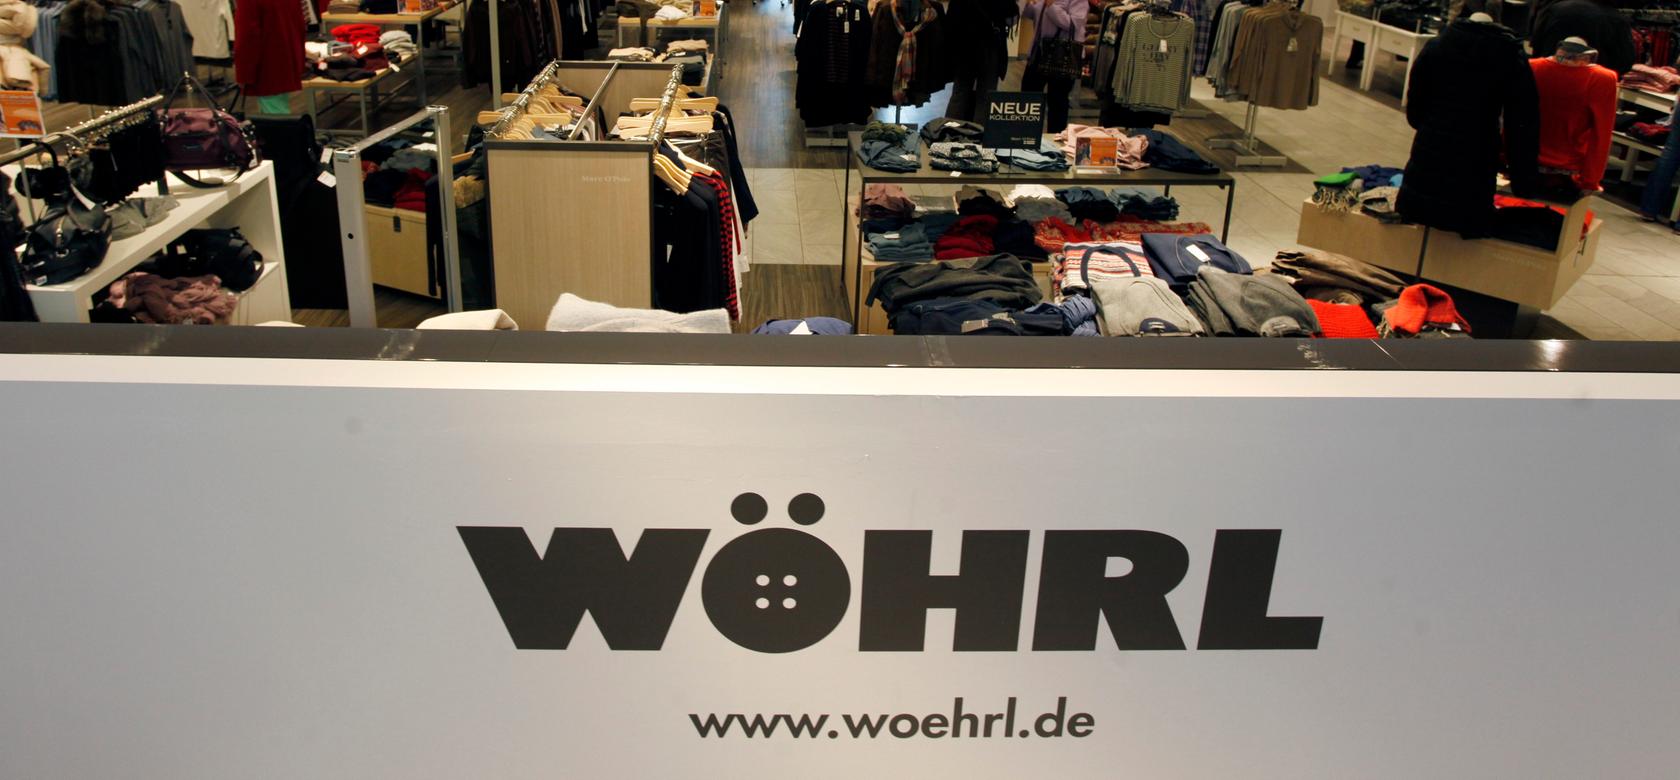 Das alteingesessene Nürnberger Modeunternehmen Wöhrl ist in Schieflage geraten. Jetzt soll eine drohende Insolvenz verhindert werden.